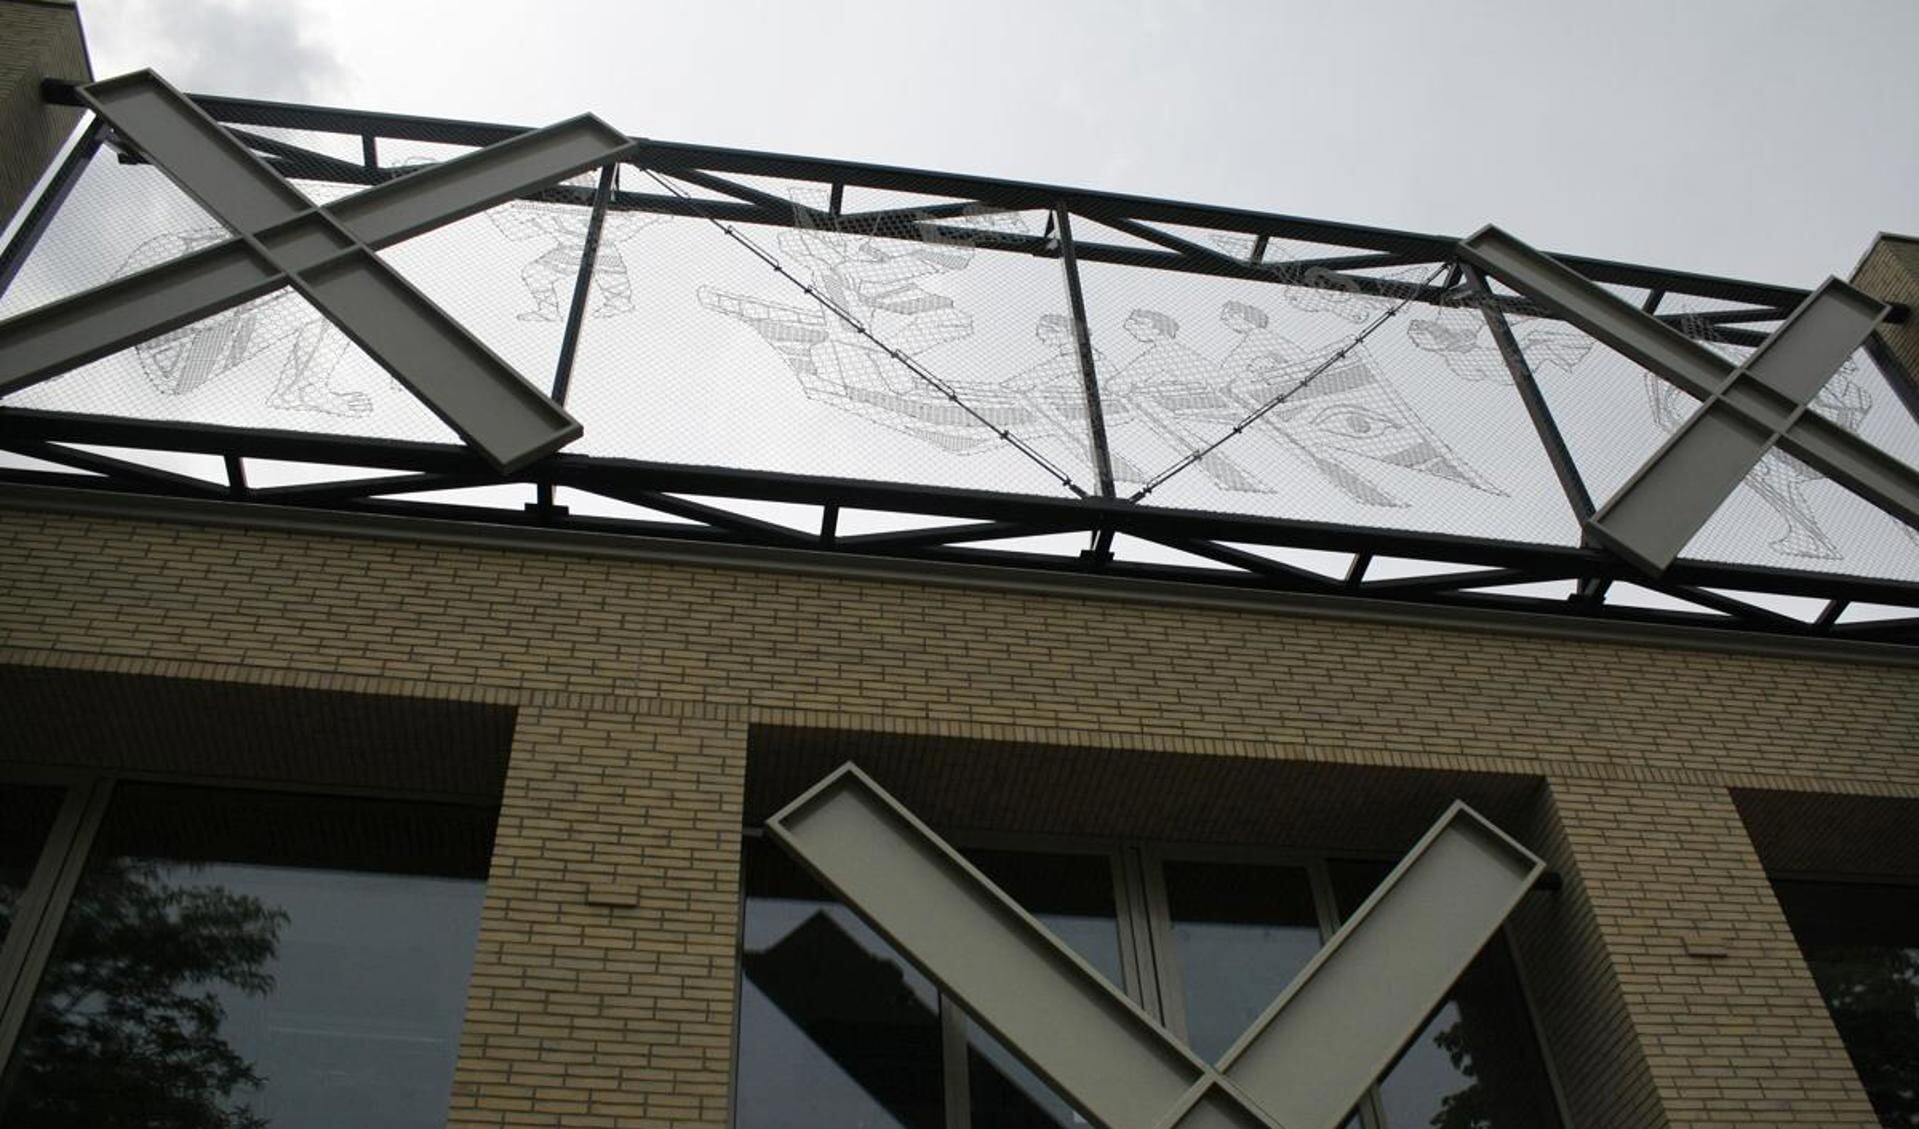 Het Stedelijk Gymnasium gaat na de zomer open. BredaVandaag.nl ging nu vast op bezoek. foto Wijnand Nijs